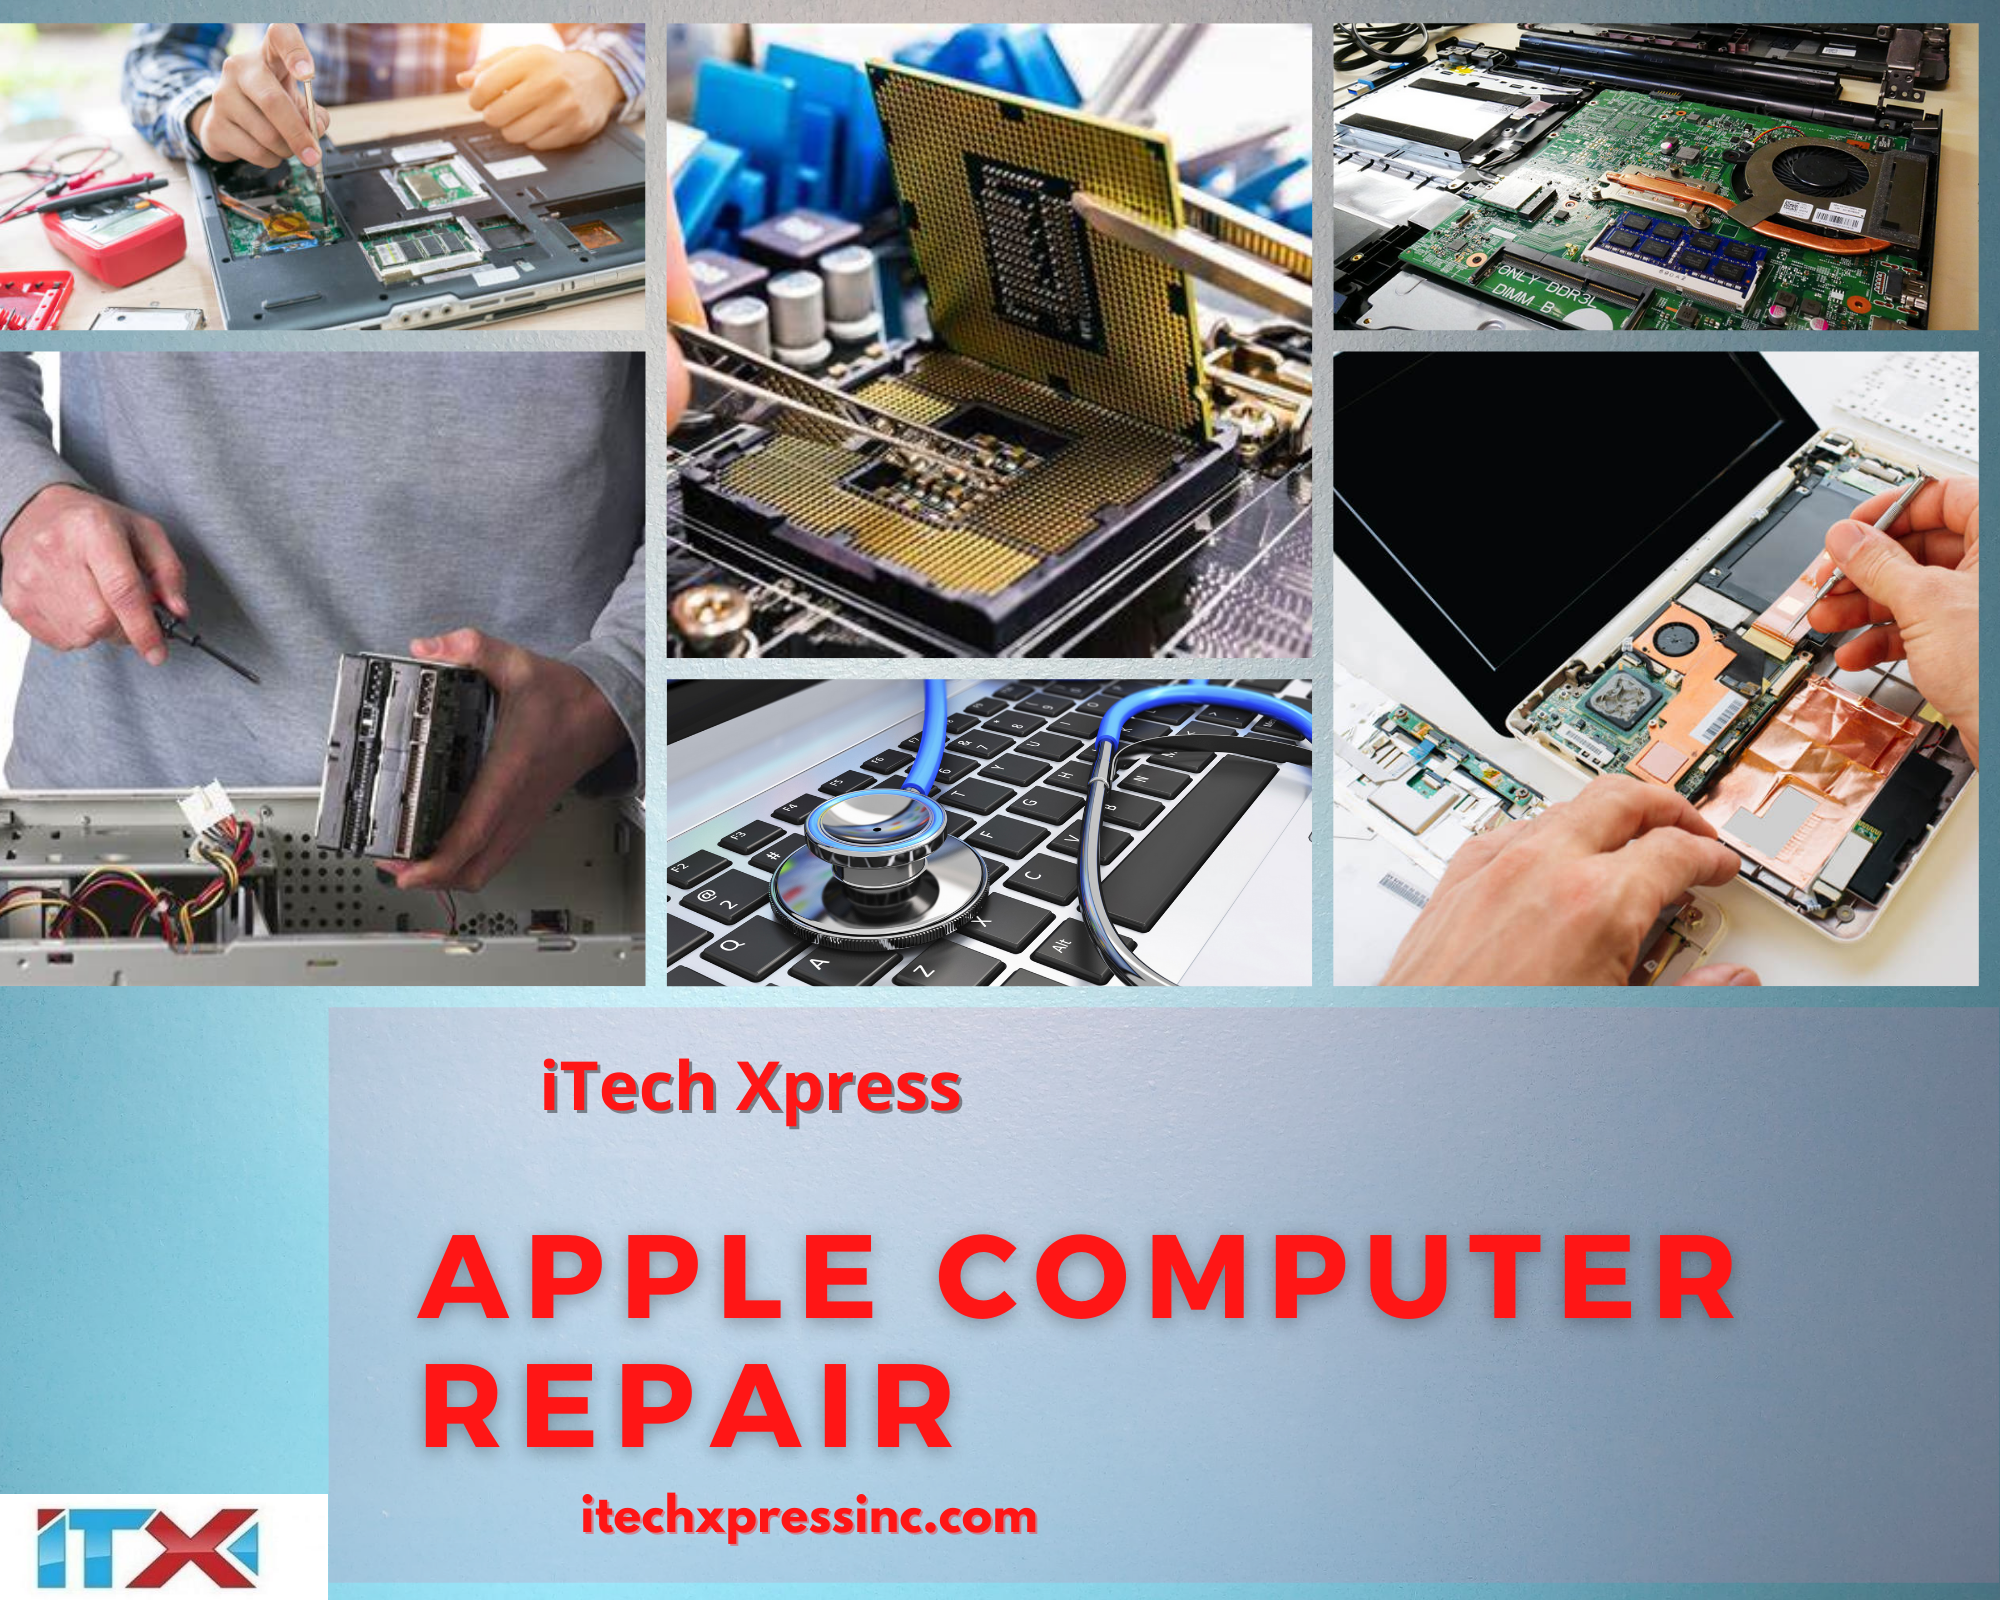 Apple Computer Repair